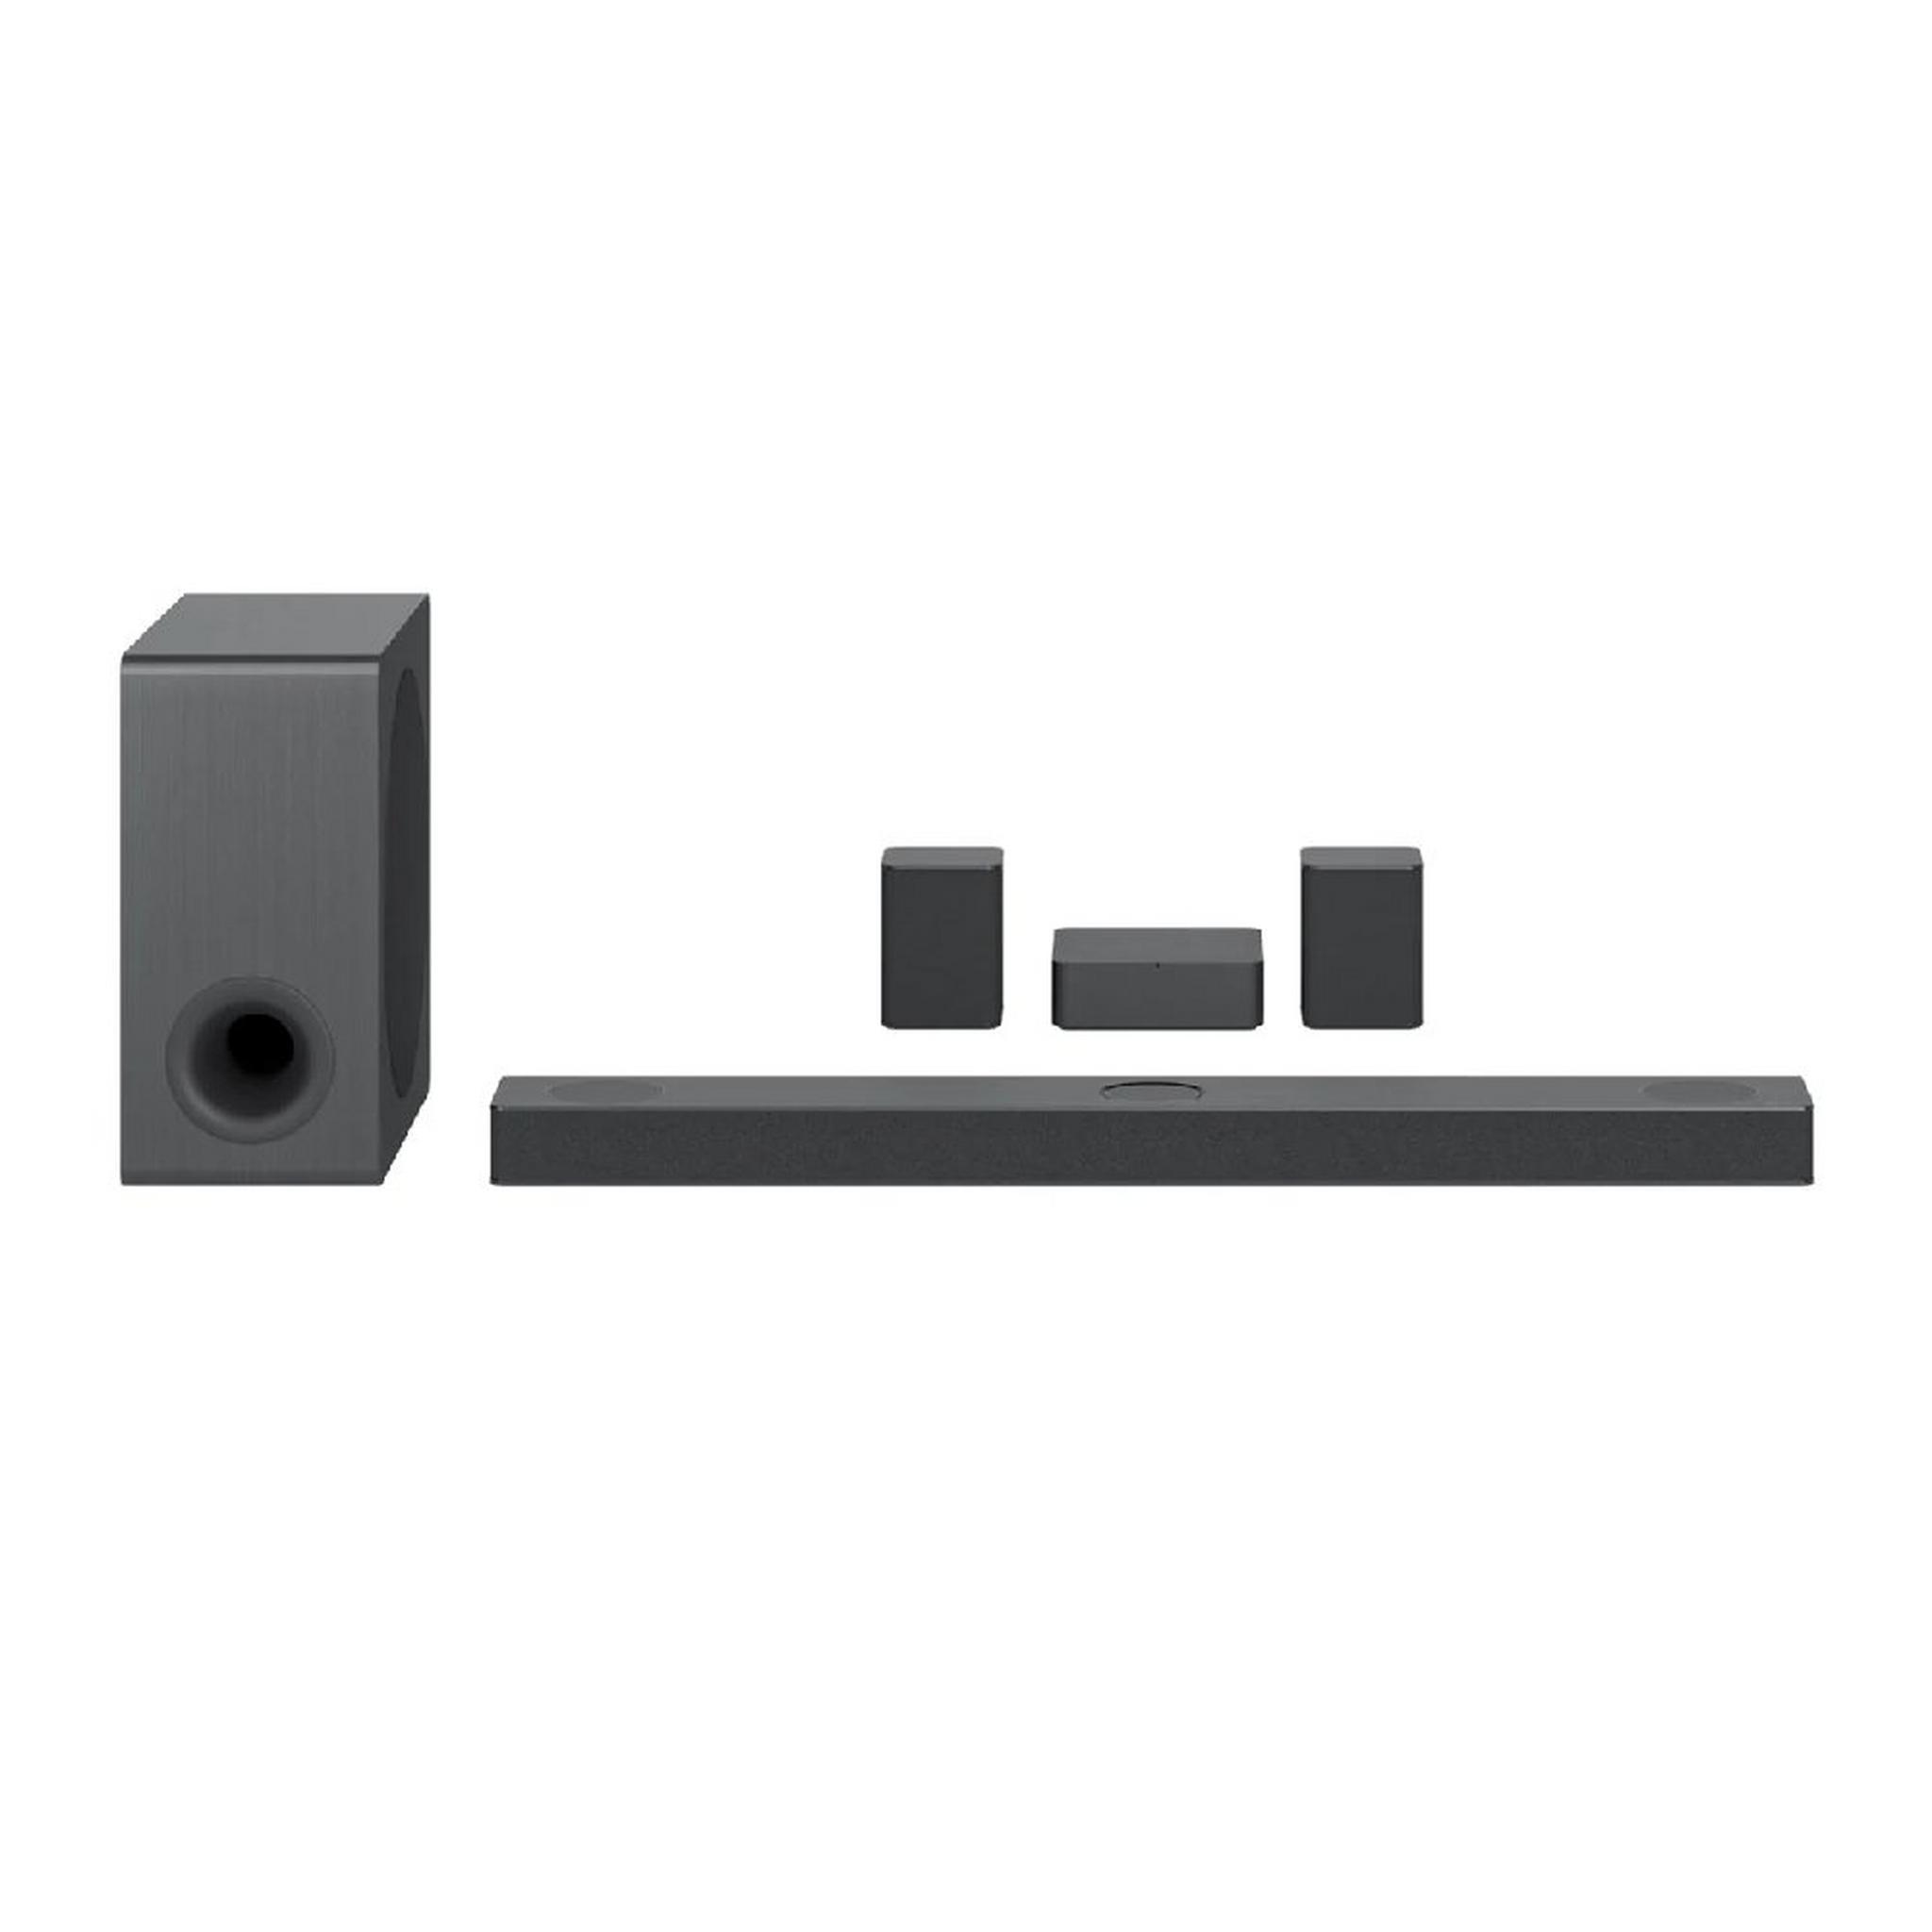 ساوند بار، مضخم صونت ومكبرات صوت محيطية، قناة 5.1.3، بقوة 620 واط، S80QR - أسود